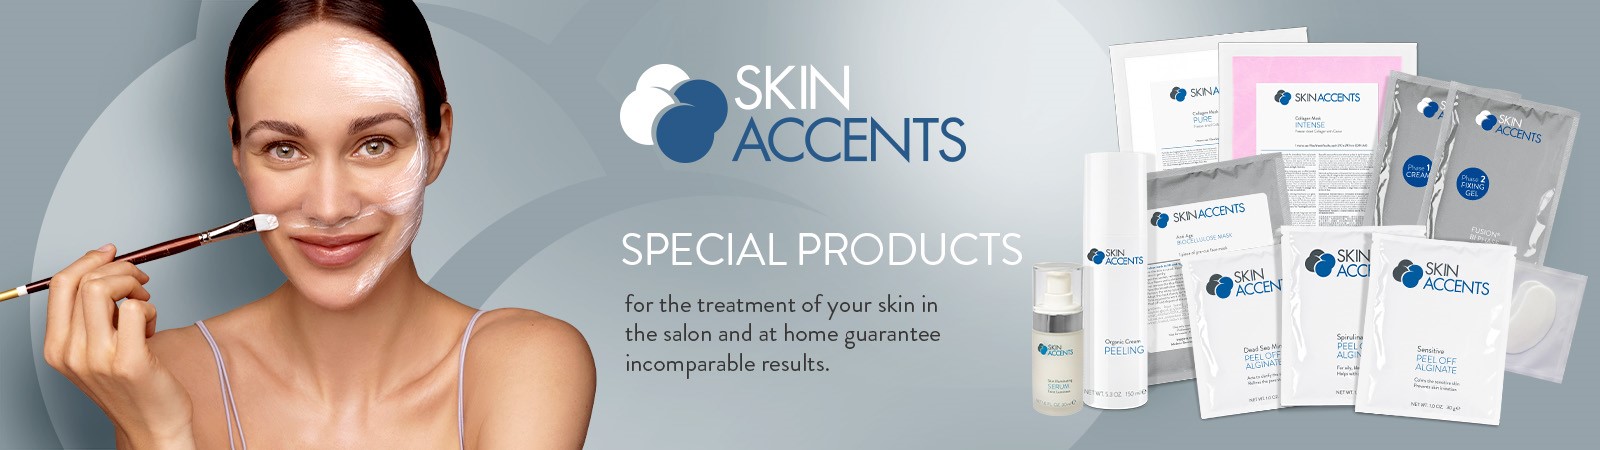 Skin Accents Behandlungsprodukte